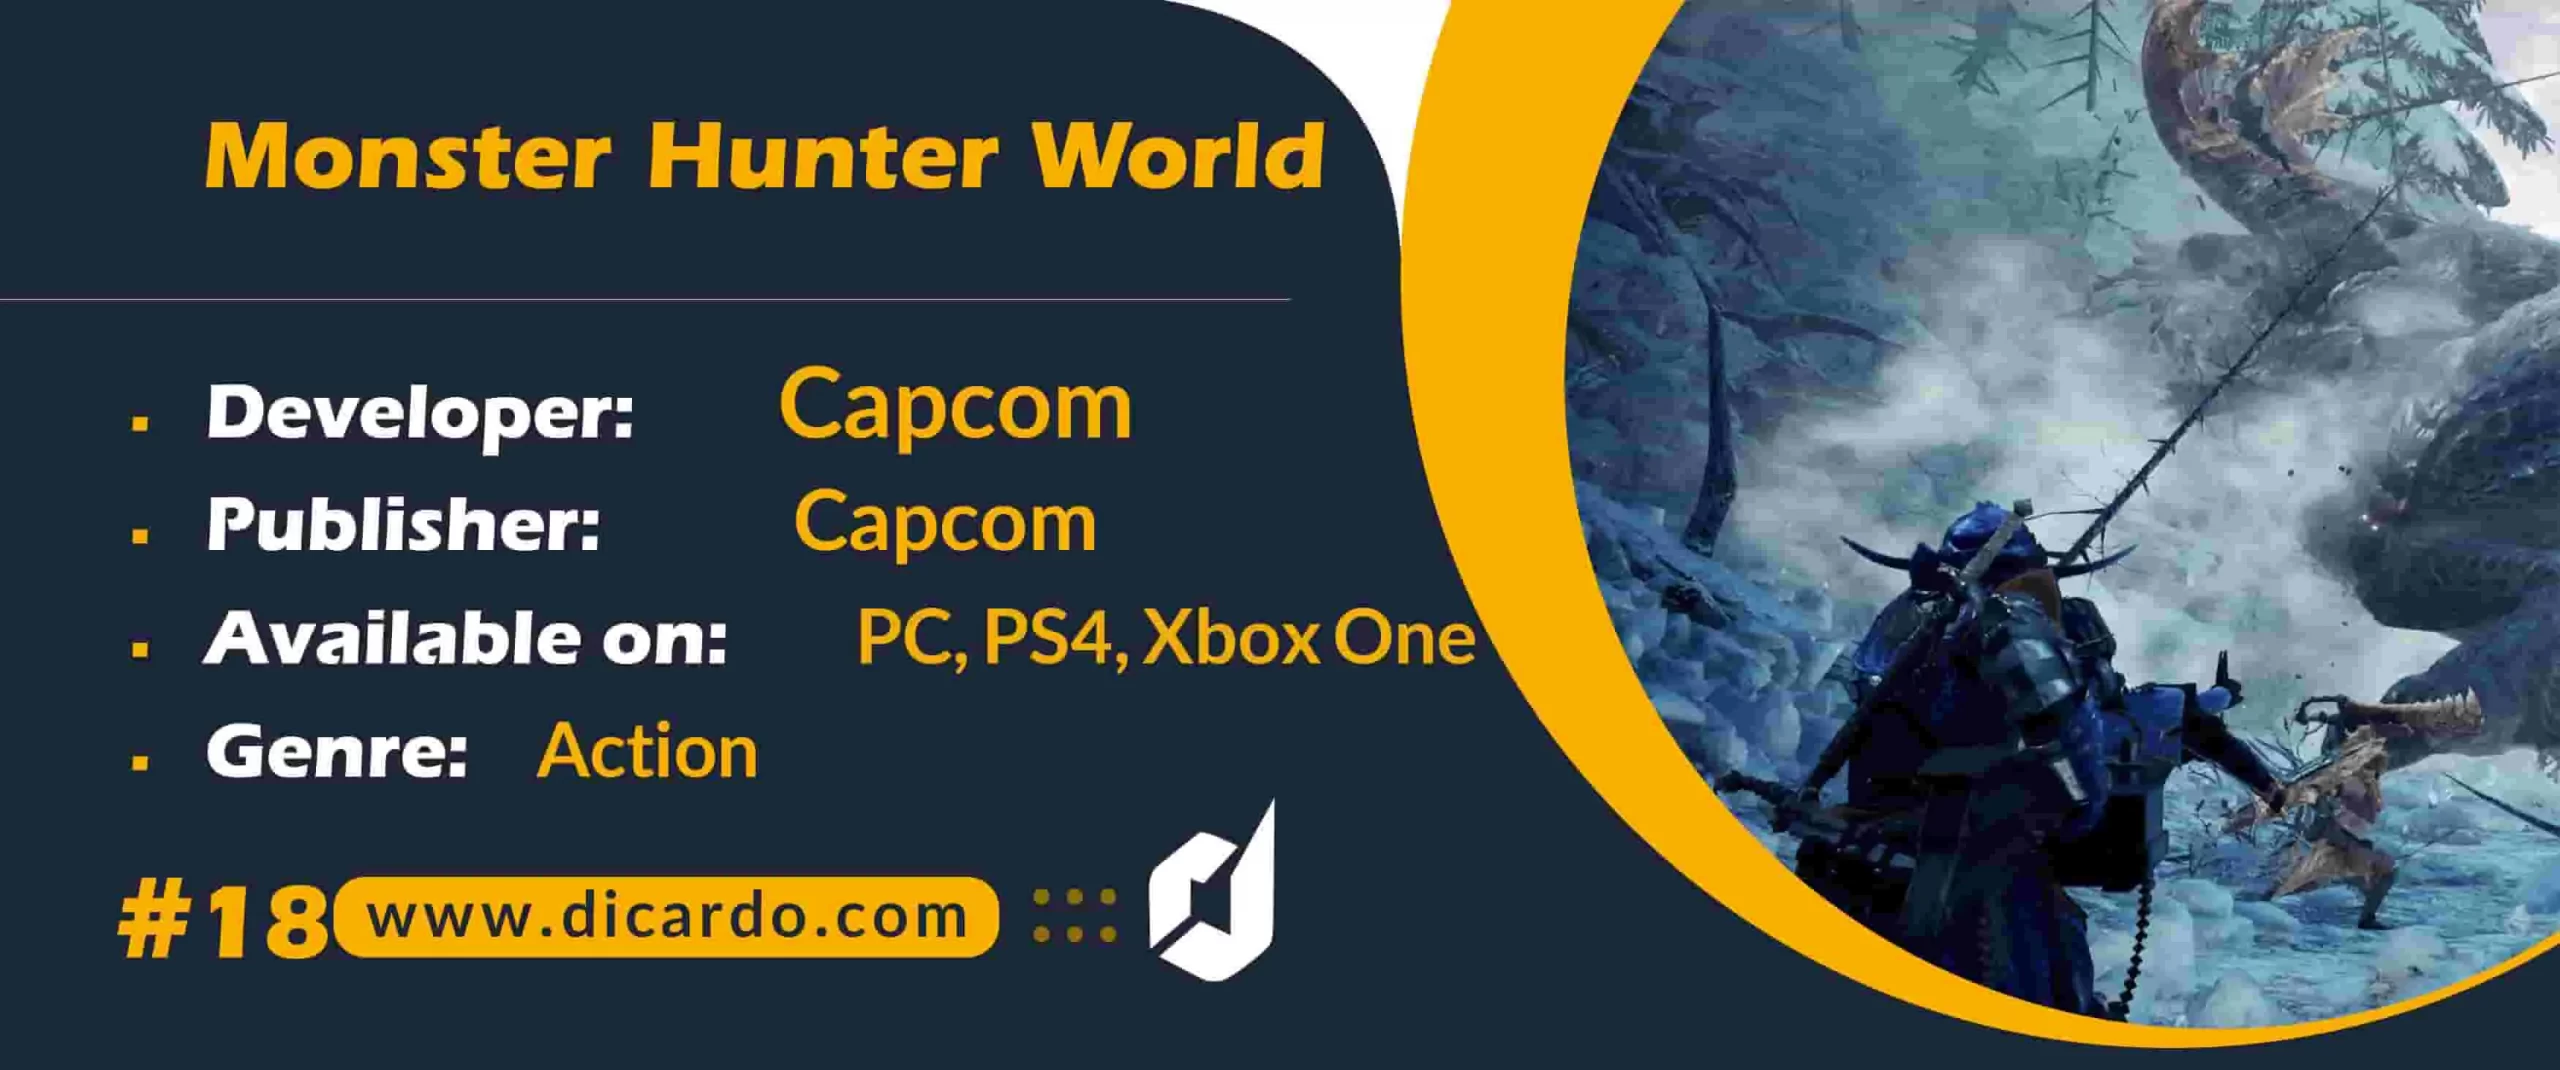 #18 مانستر هانتر وورد Monster Hunter World